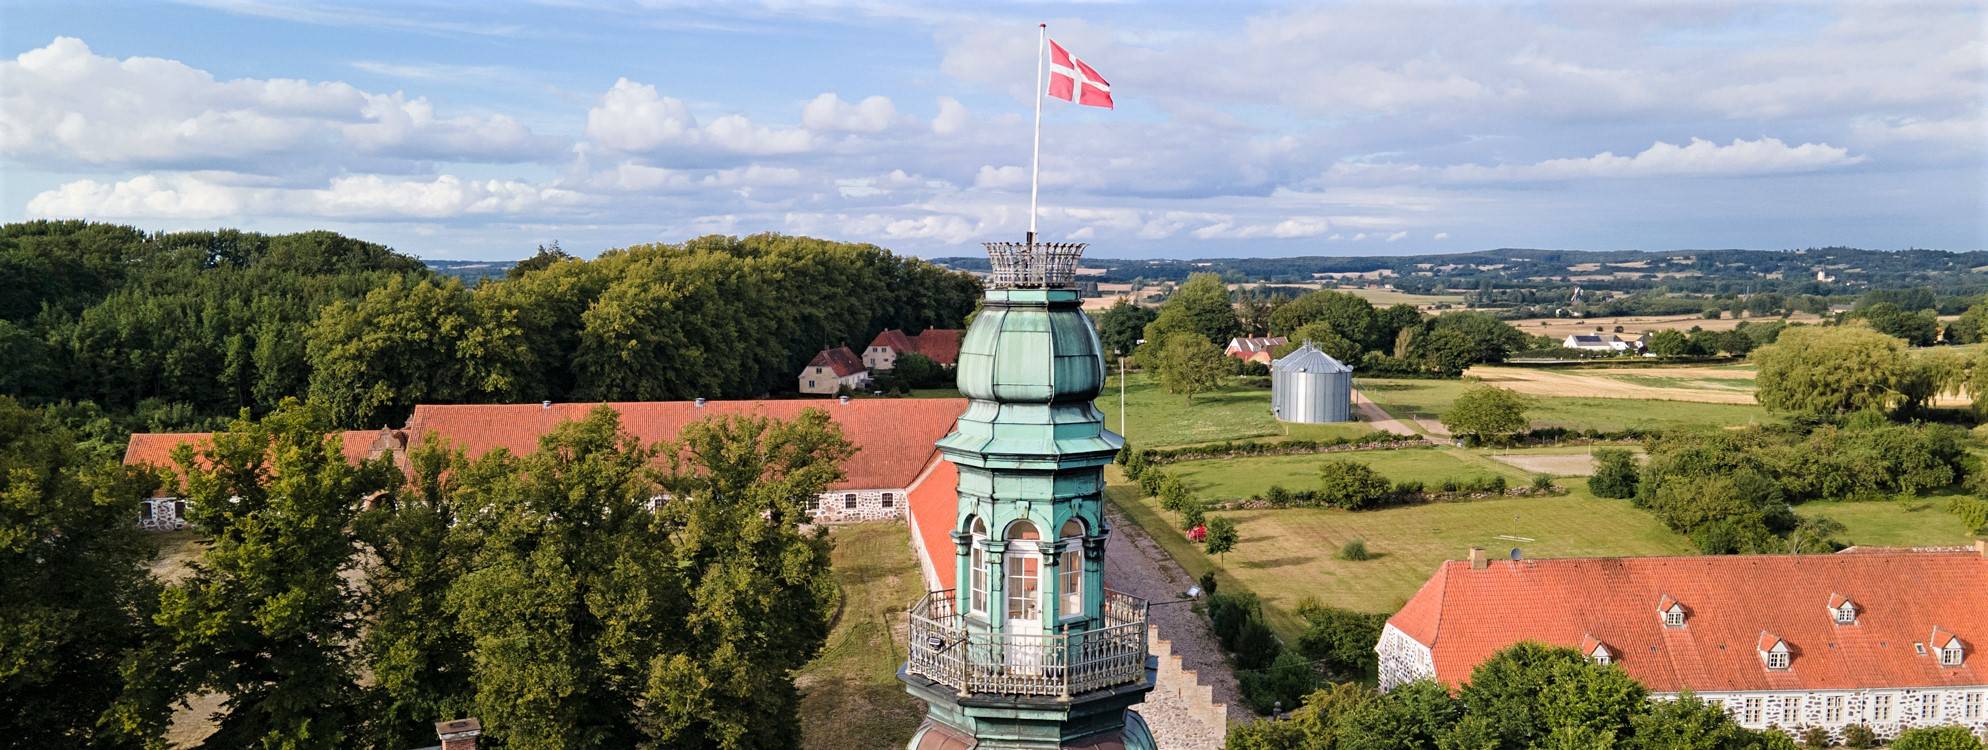 Hvedholm Slot Tårn